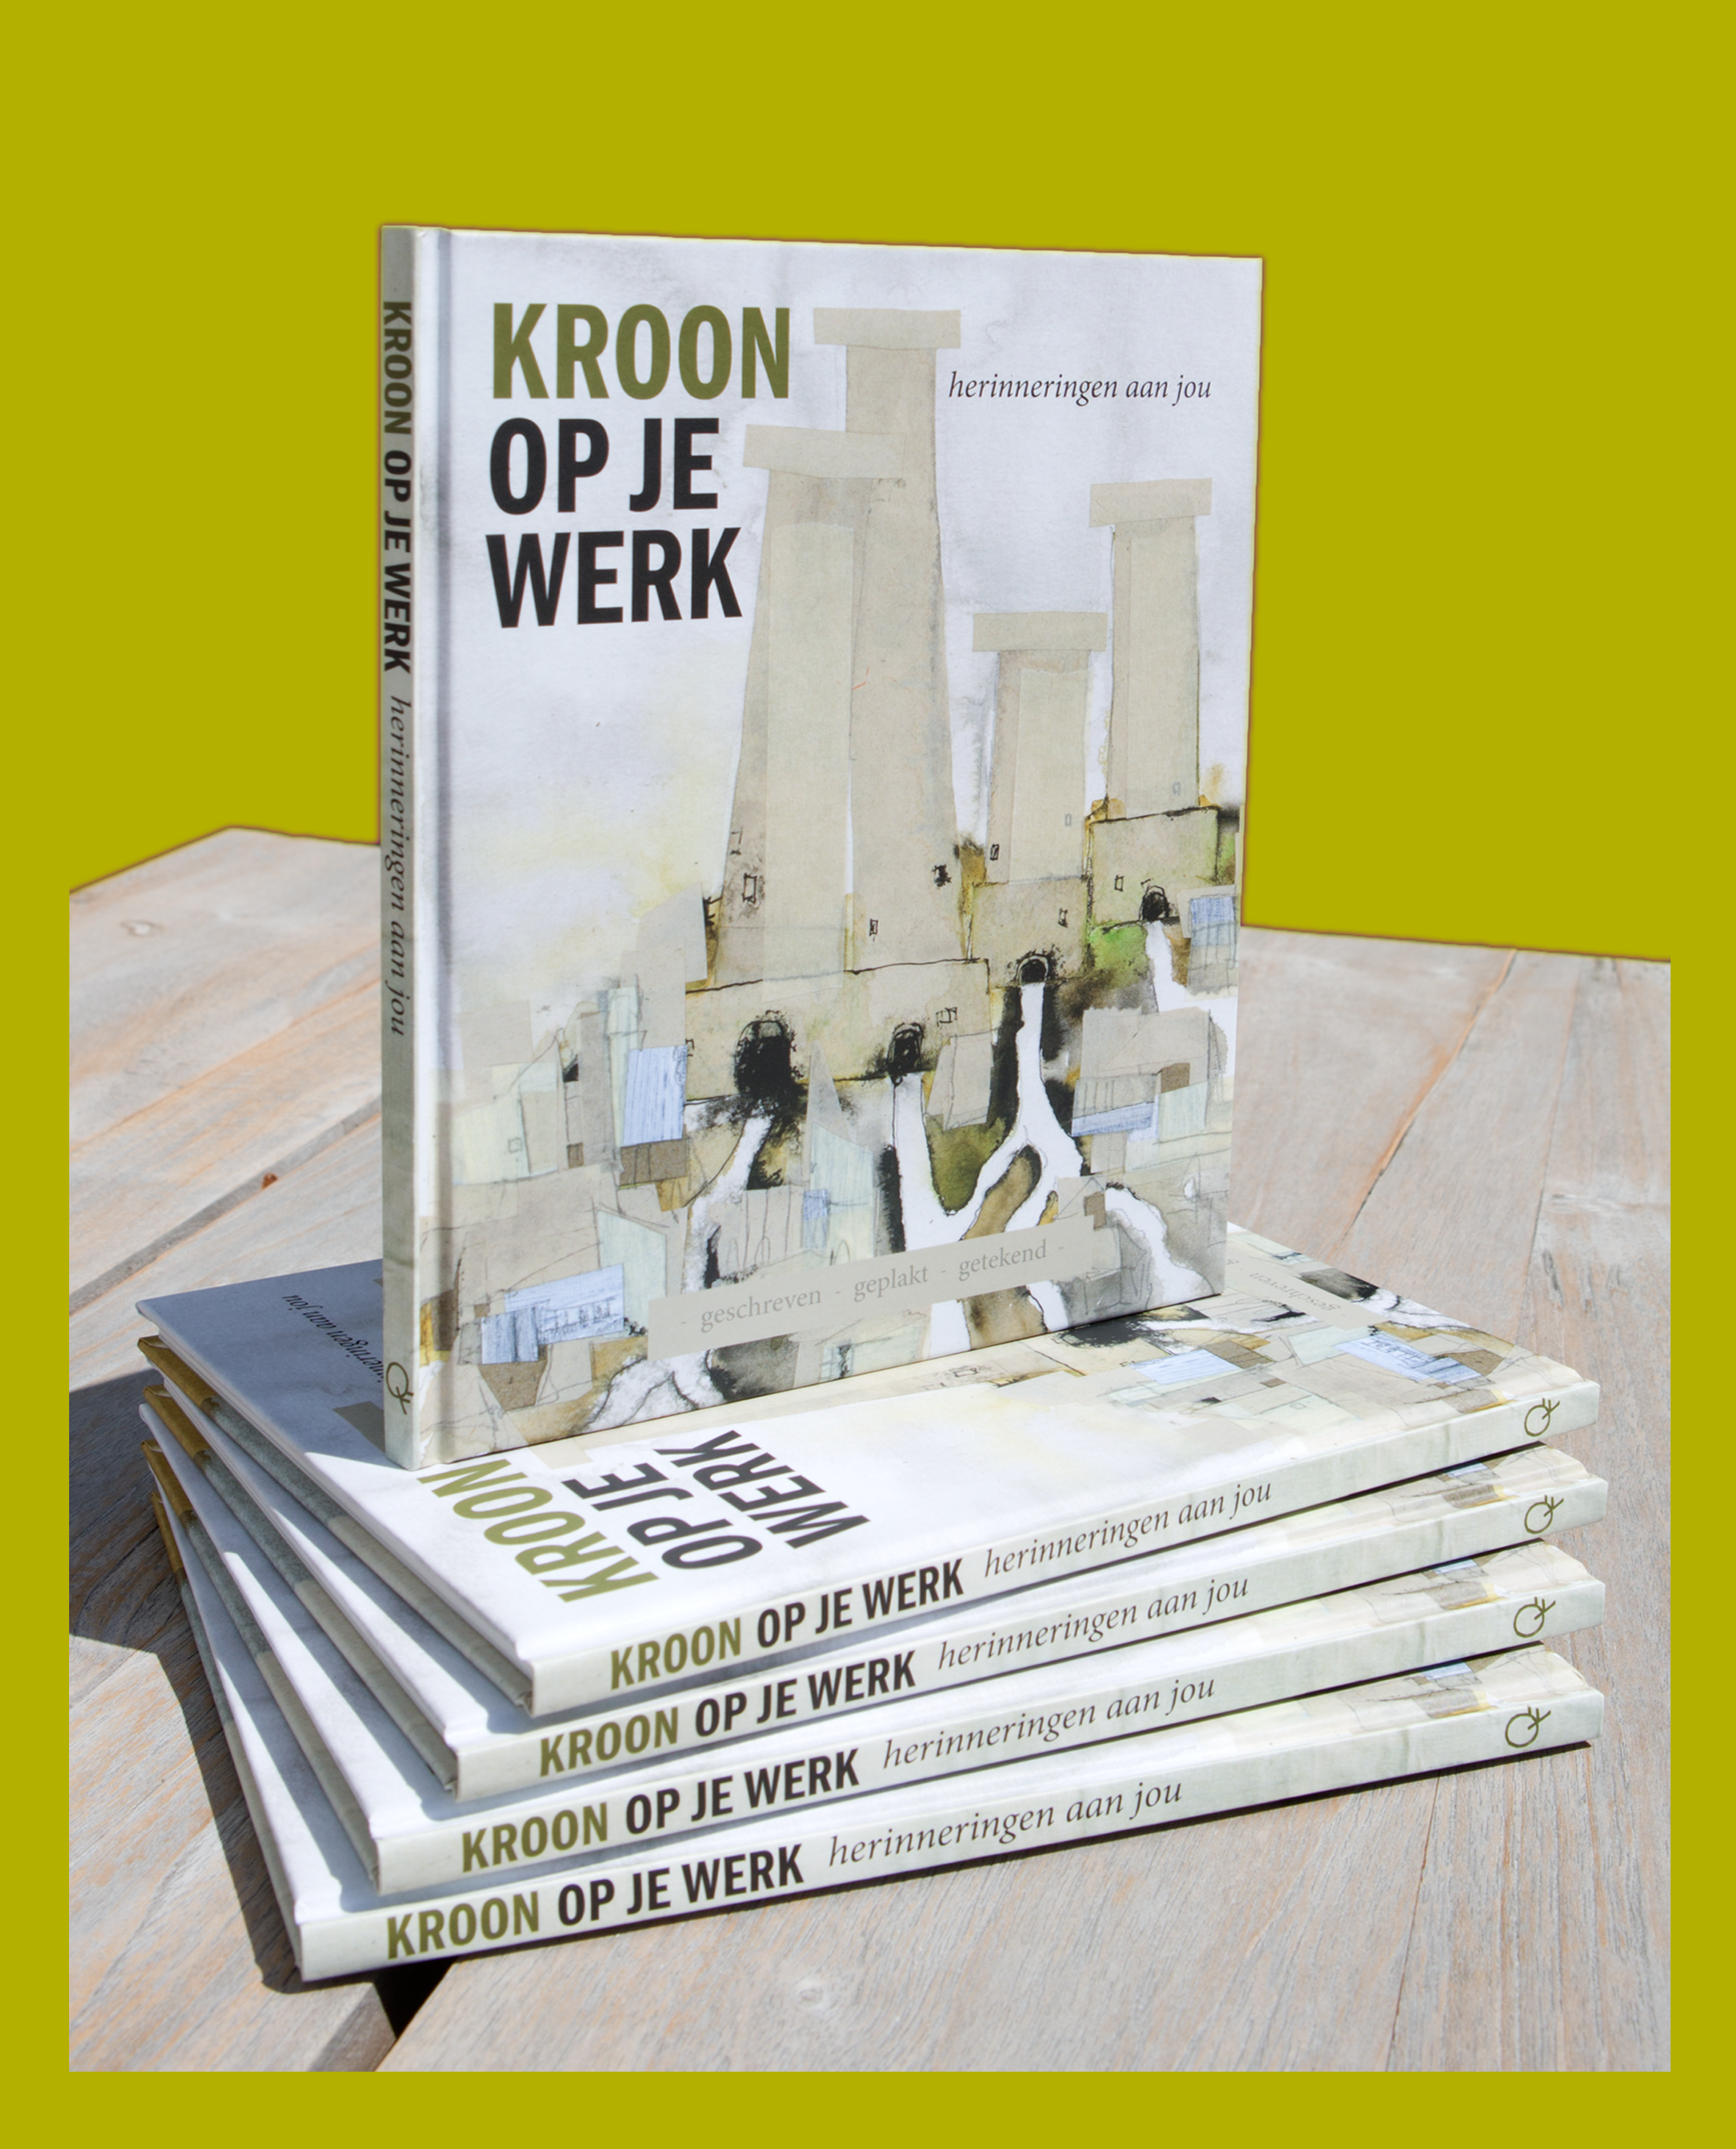 Het boek Kroon op je werk is een origineel, persoonlijk afscheidscadeau voor je collega.